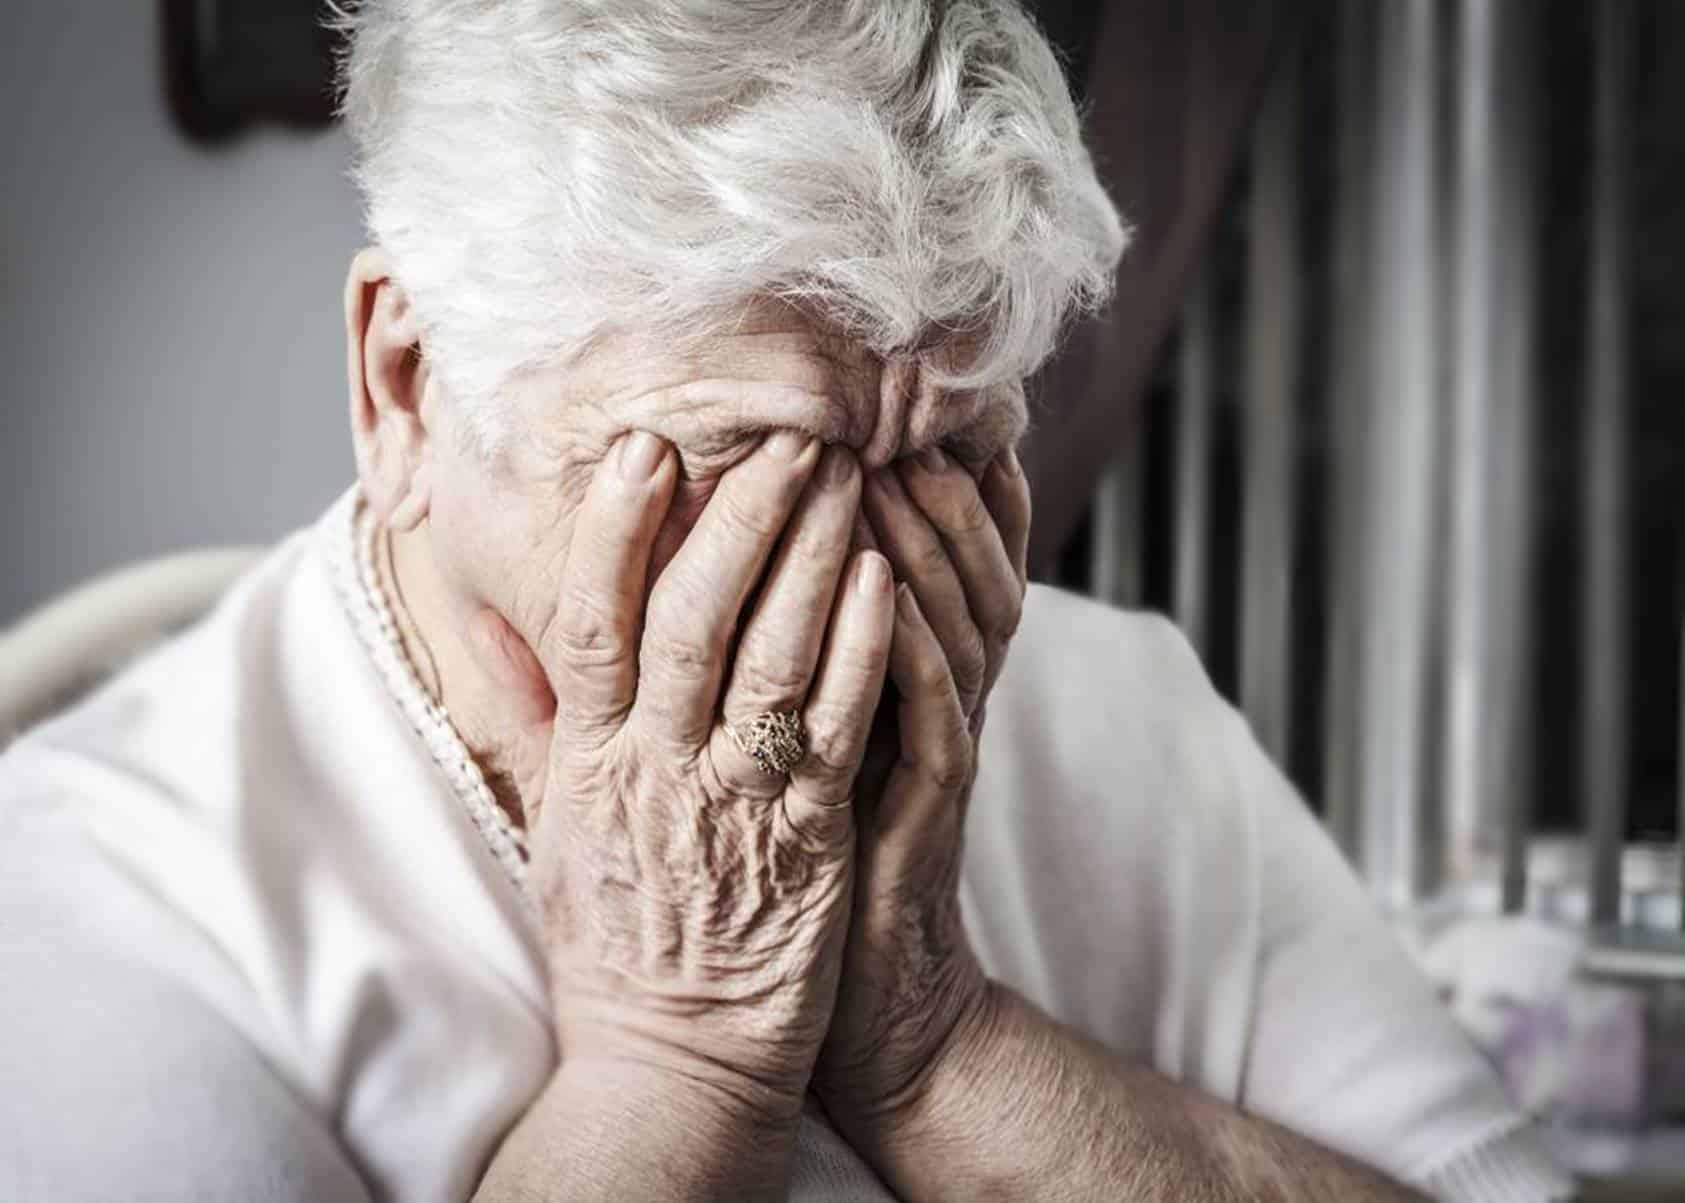 ALERTA de novo golpe aumenta sensação de insegurança entre aposentados